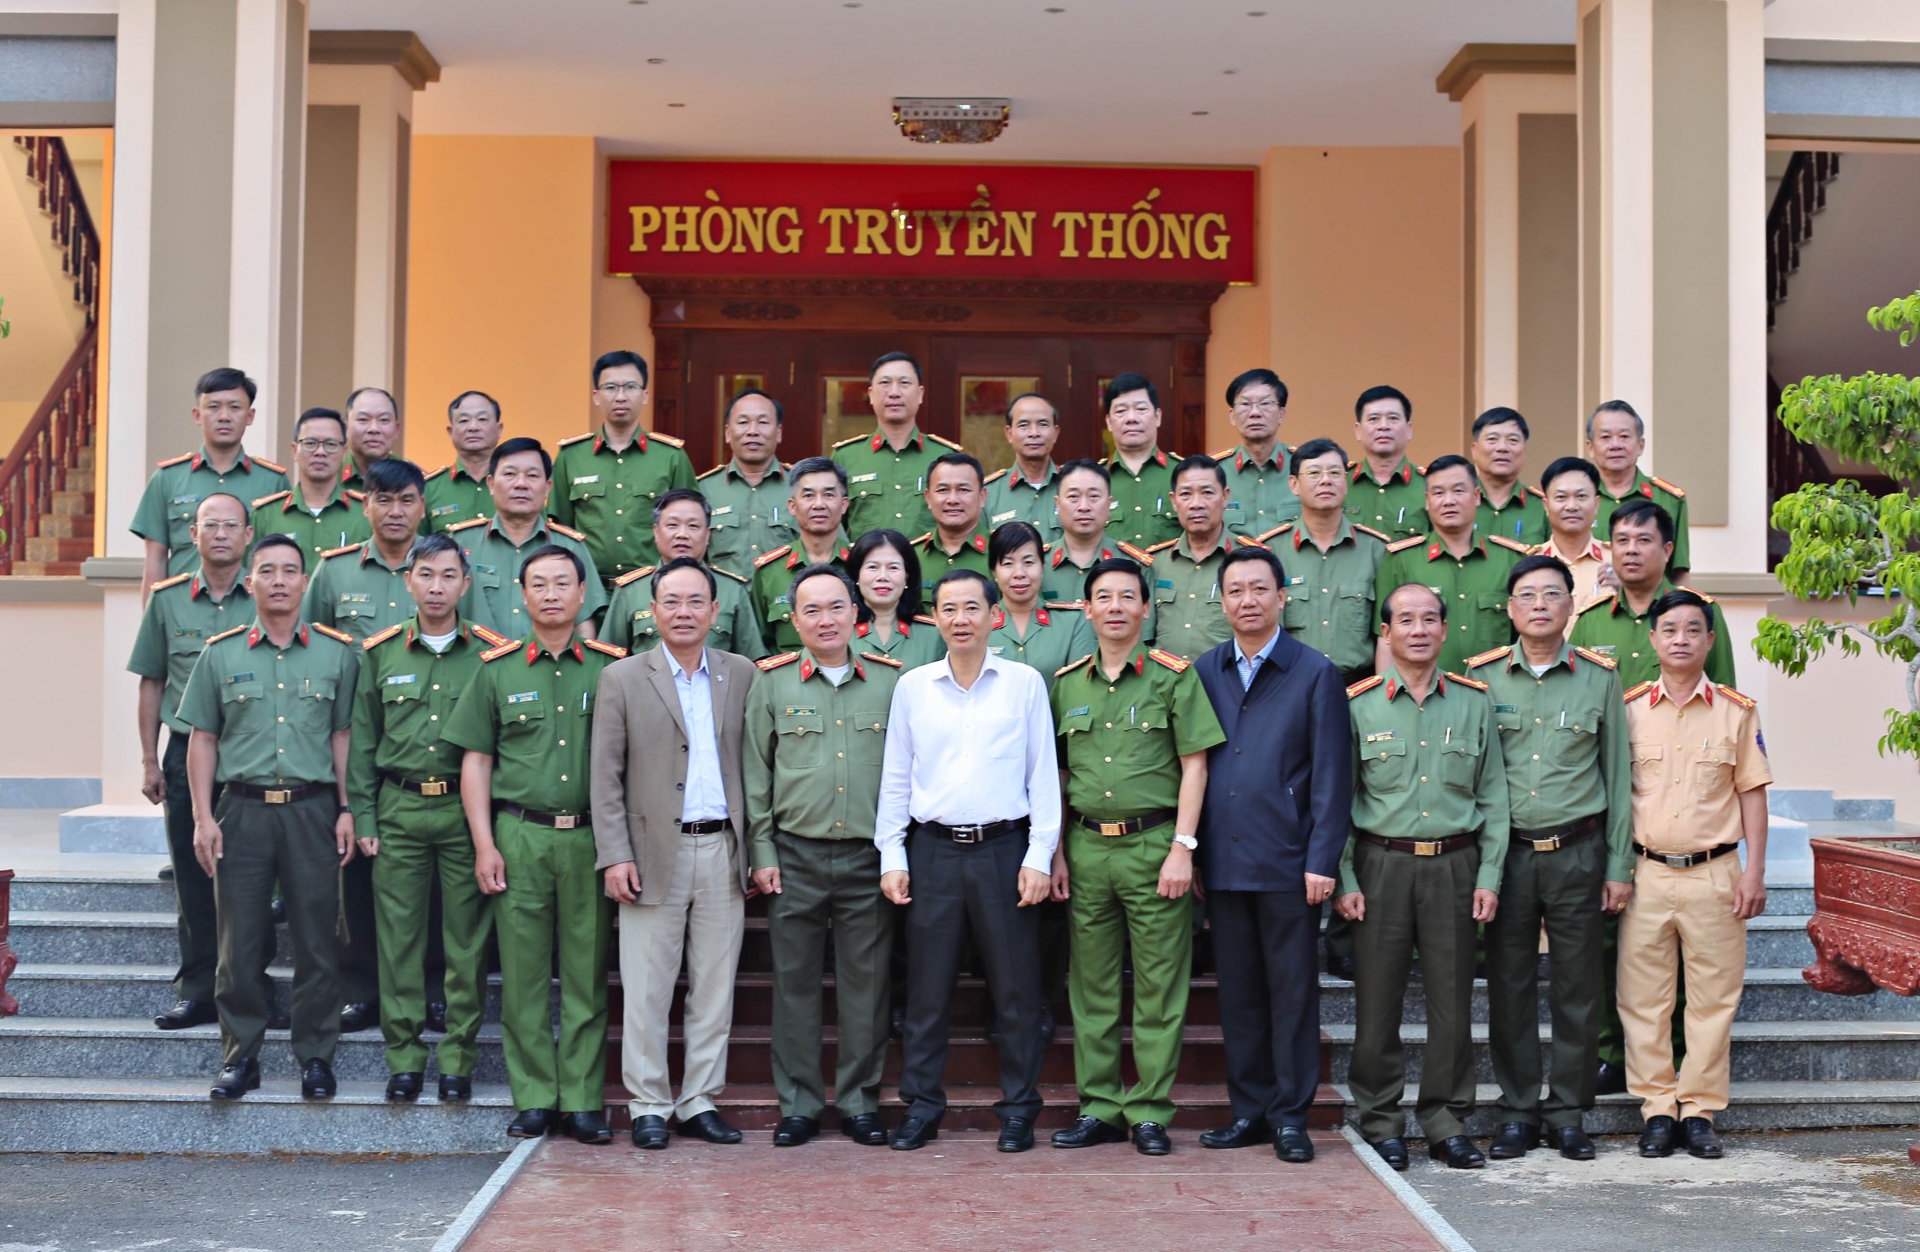 Đồng chí Nguyễn Thái Học, Quyền Bí thư Tỉnh uỷ Lâm Đồng chụp hình lưu niệm với lãnh đạo, cán bộ Công an tỉnh Lâm Đồng